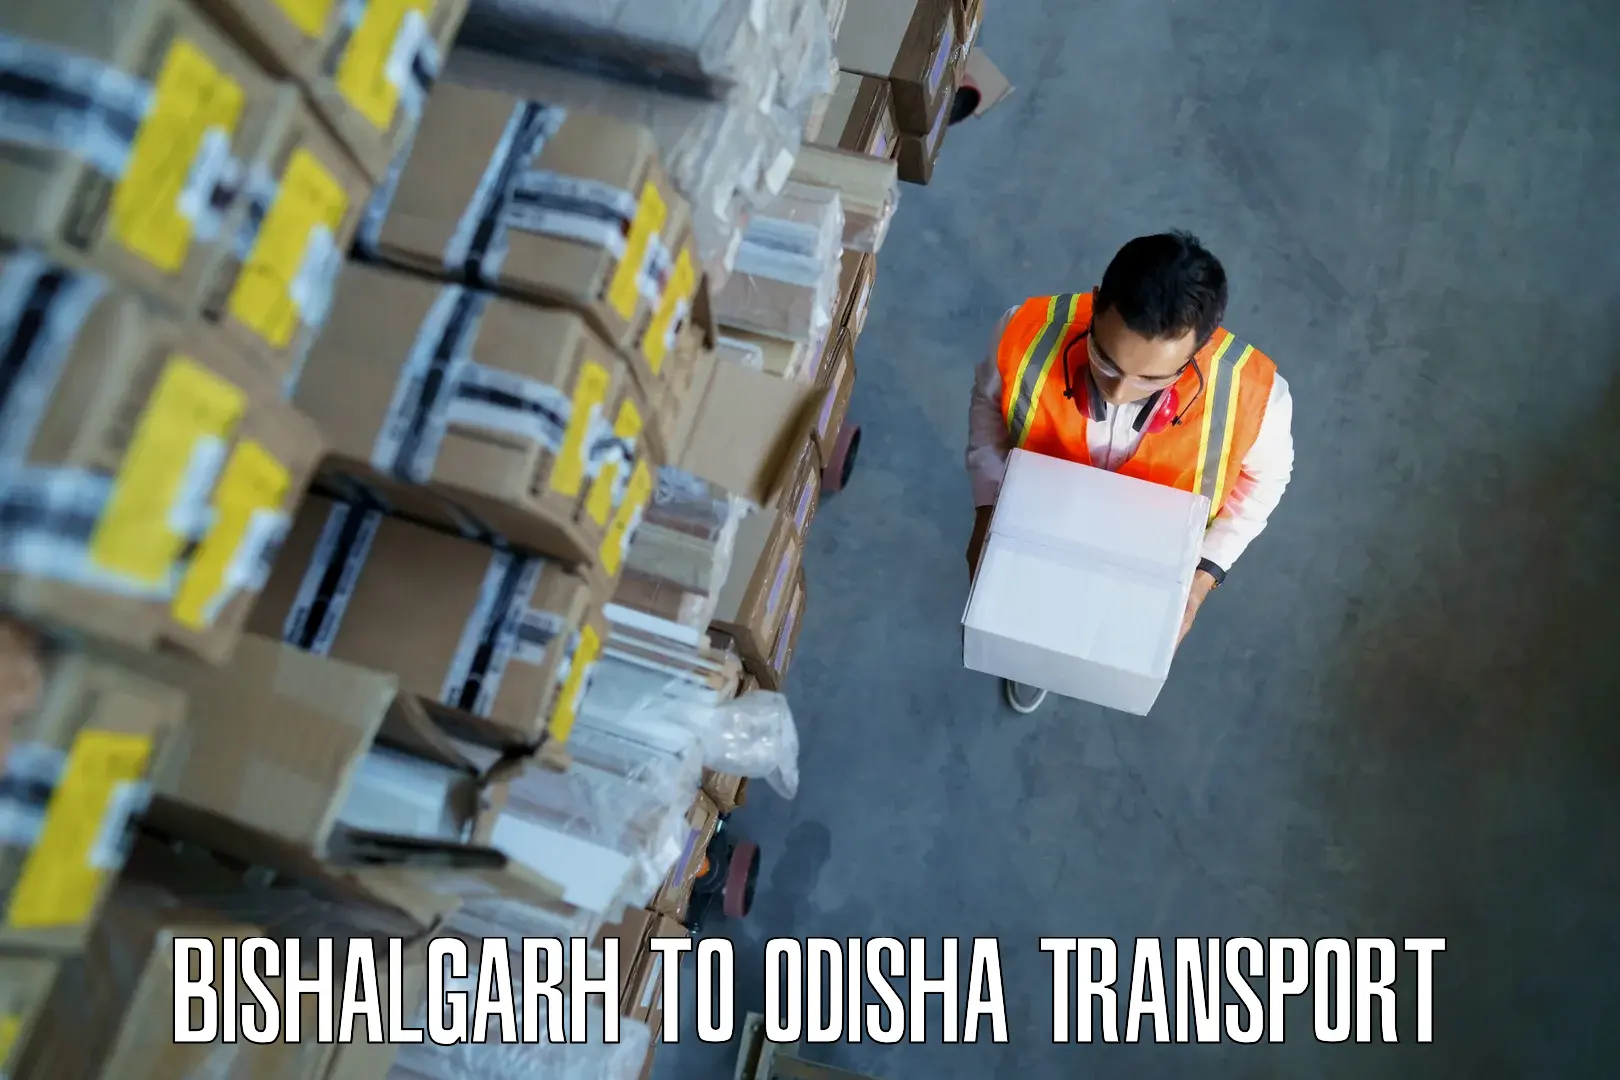 Container transport service Bishalgarh to Chikiti